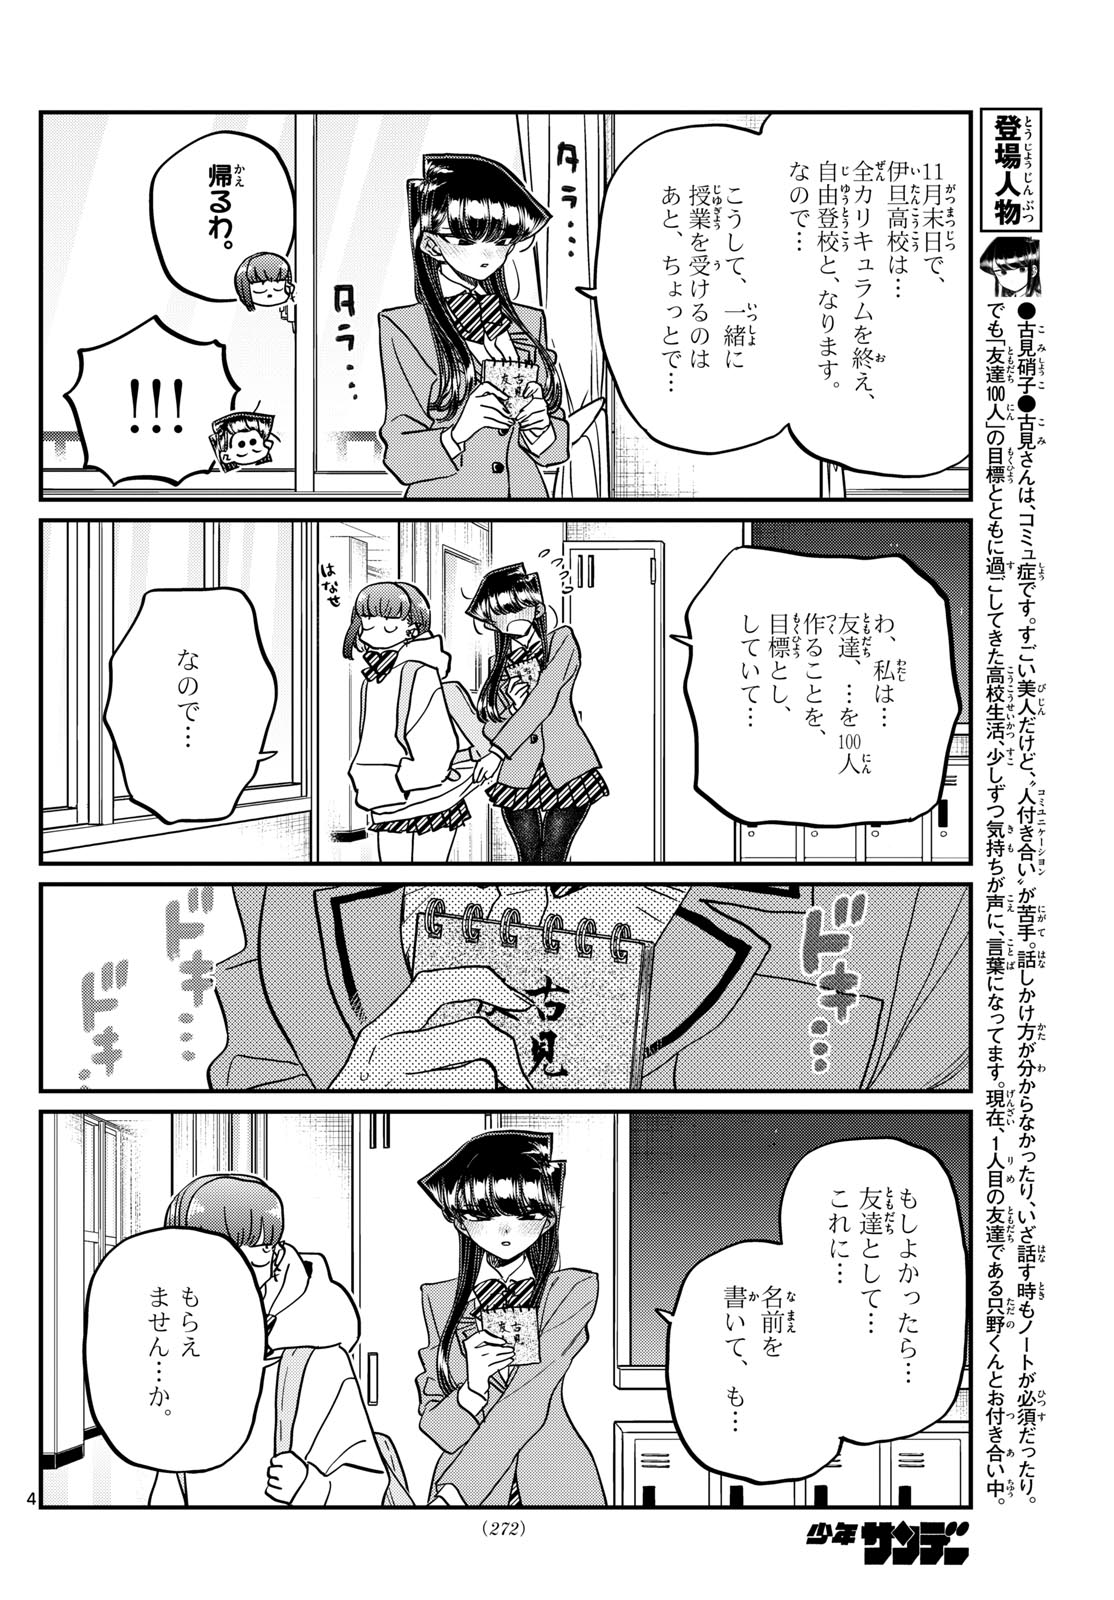 Komi-san wa Komyushou Desu - Chapter 458 - Page 4